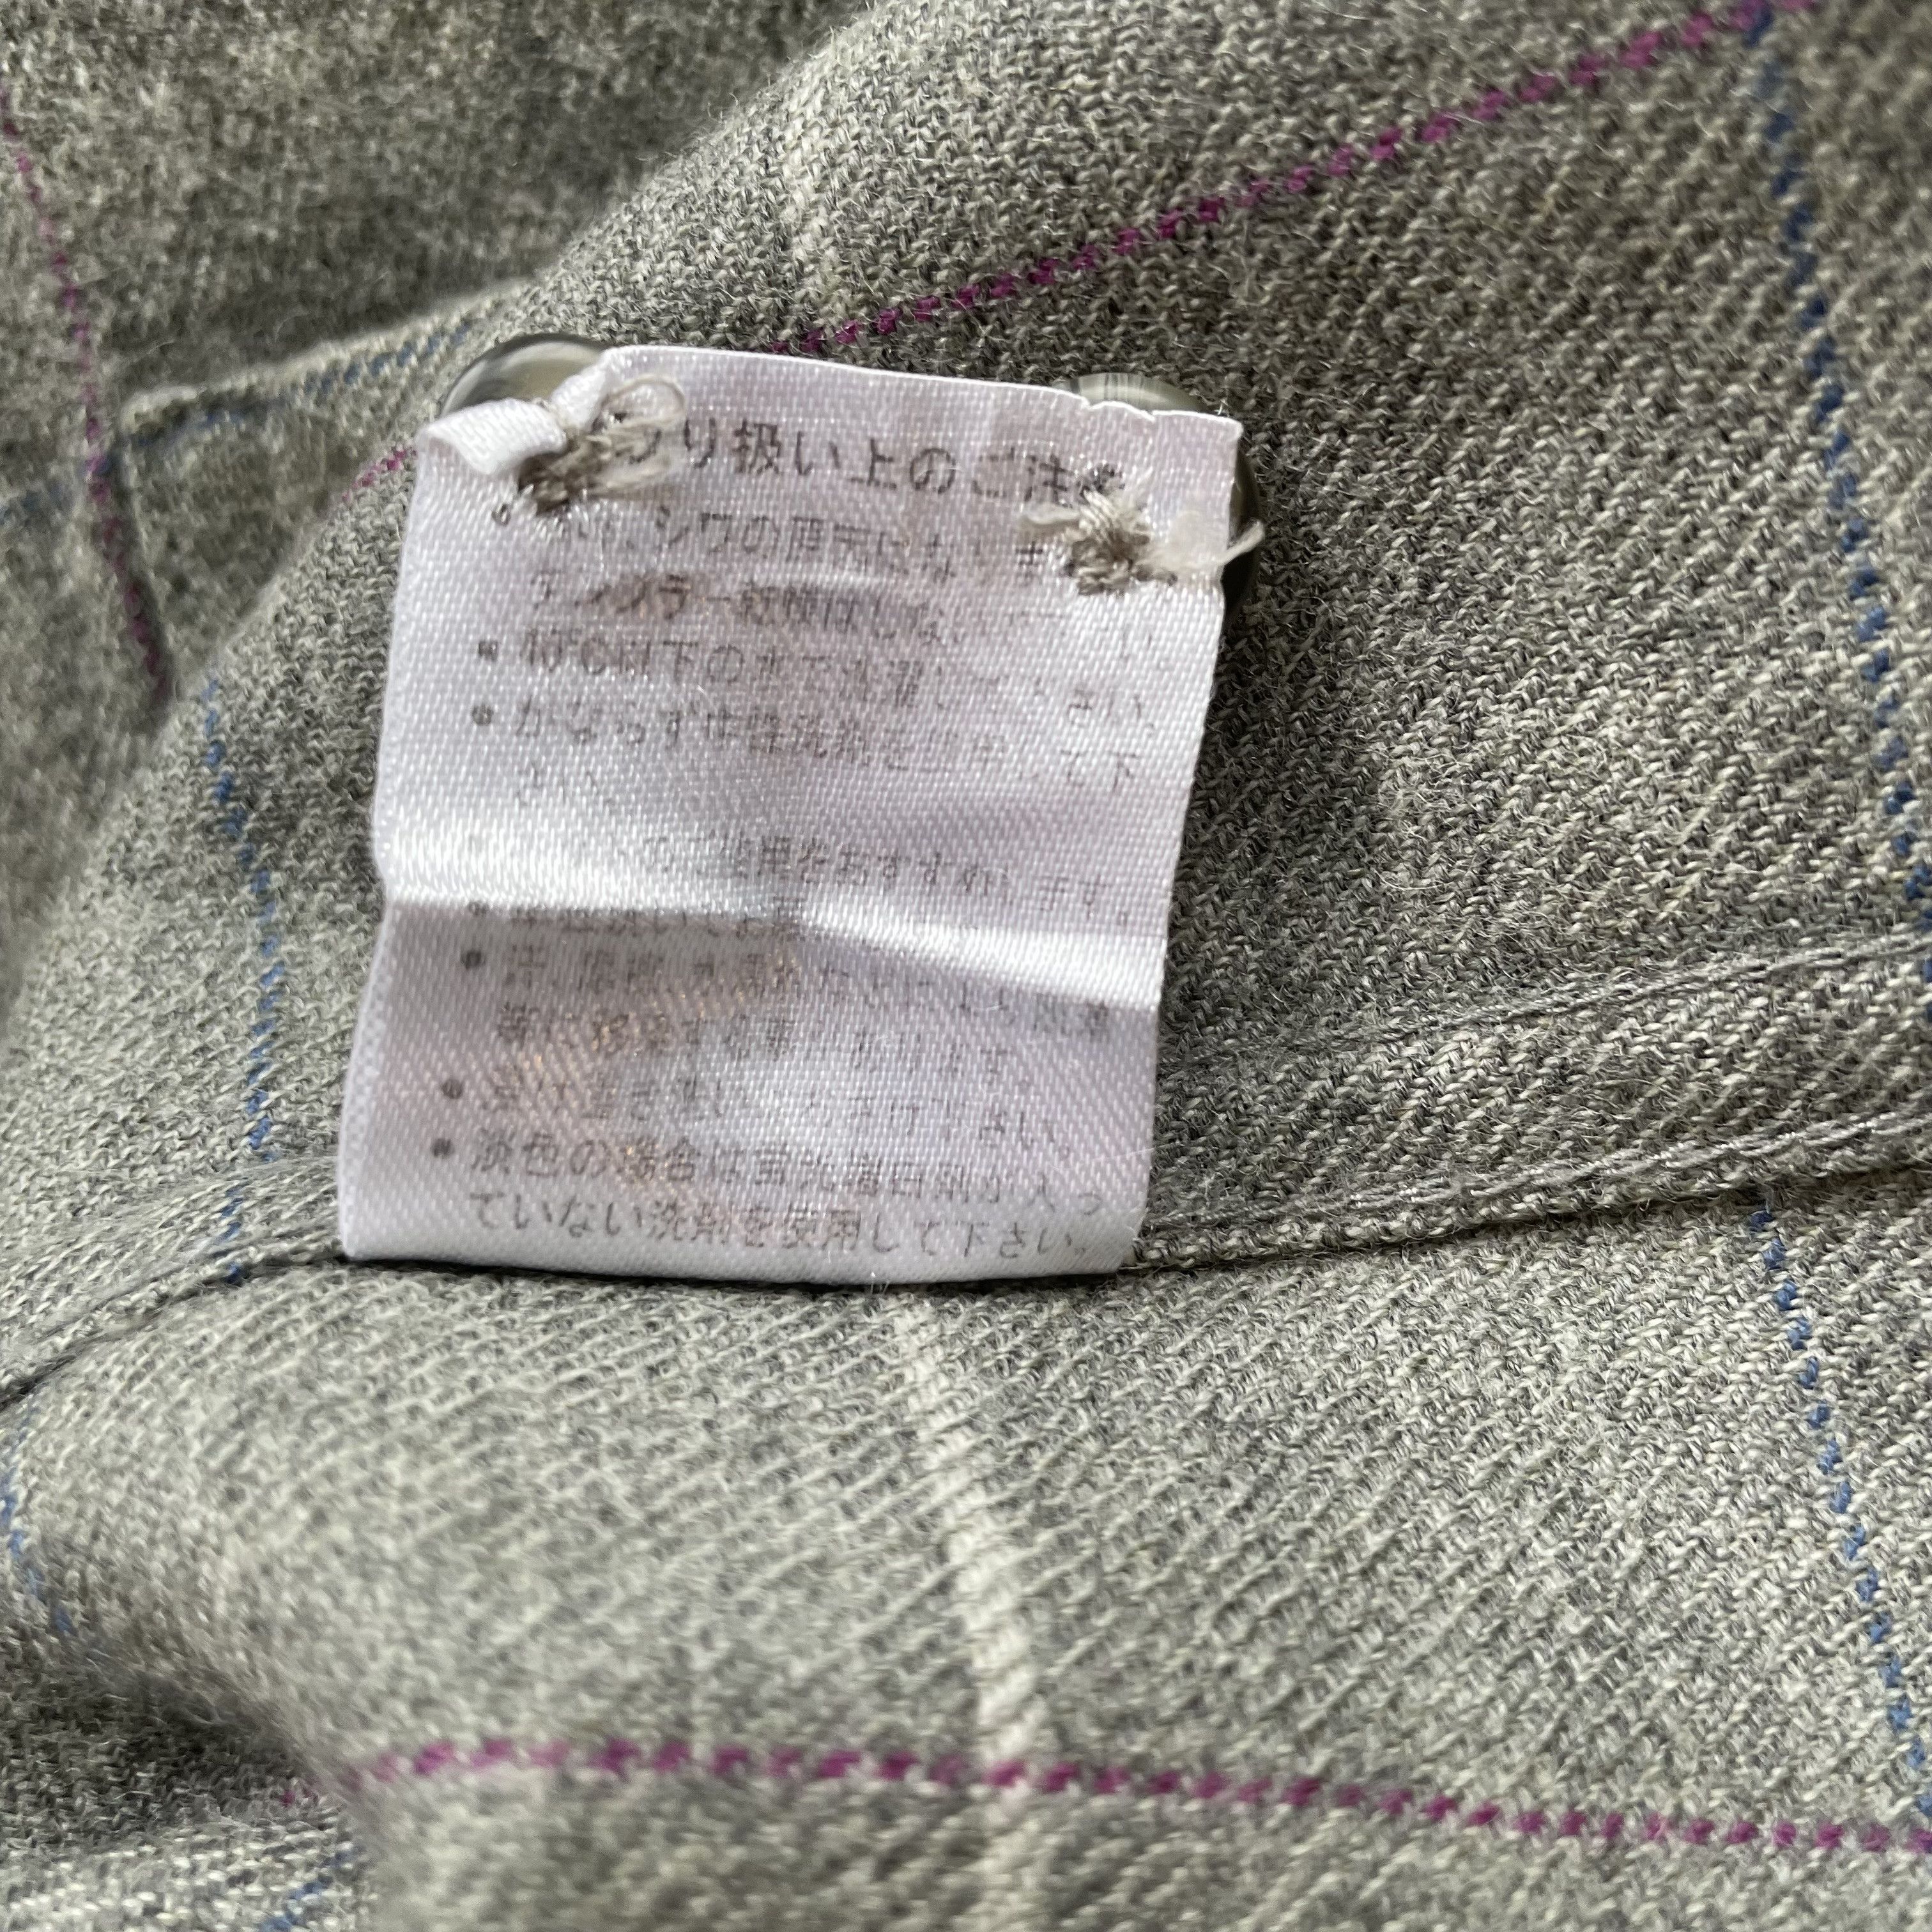 Kansai Yamamoto - Minimalist Check Shirt, Wool, (JP LL) - 7